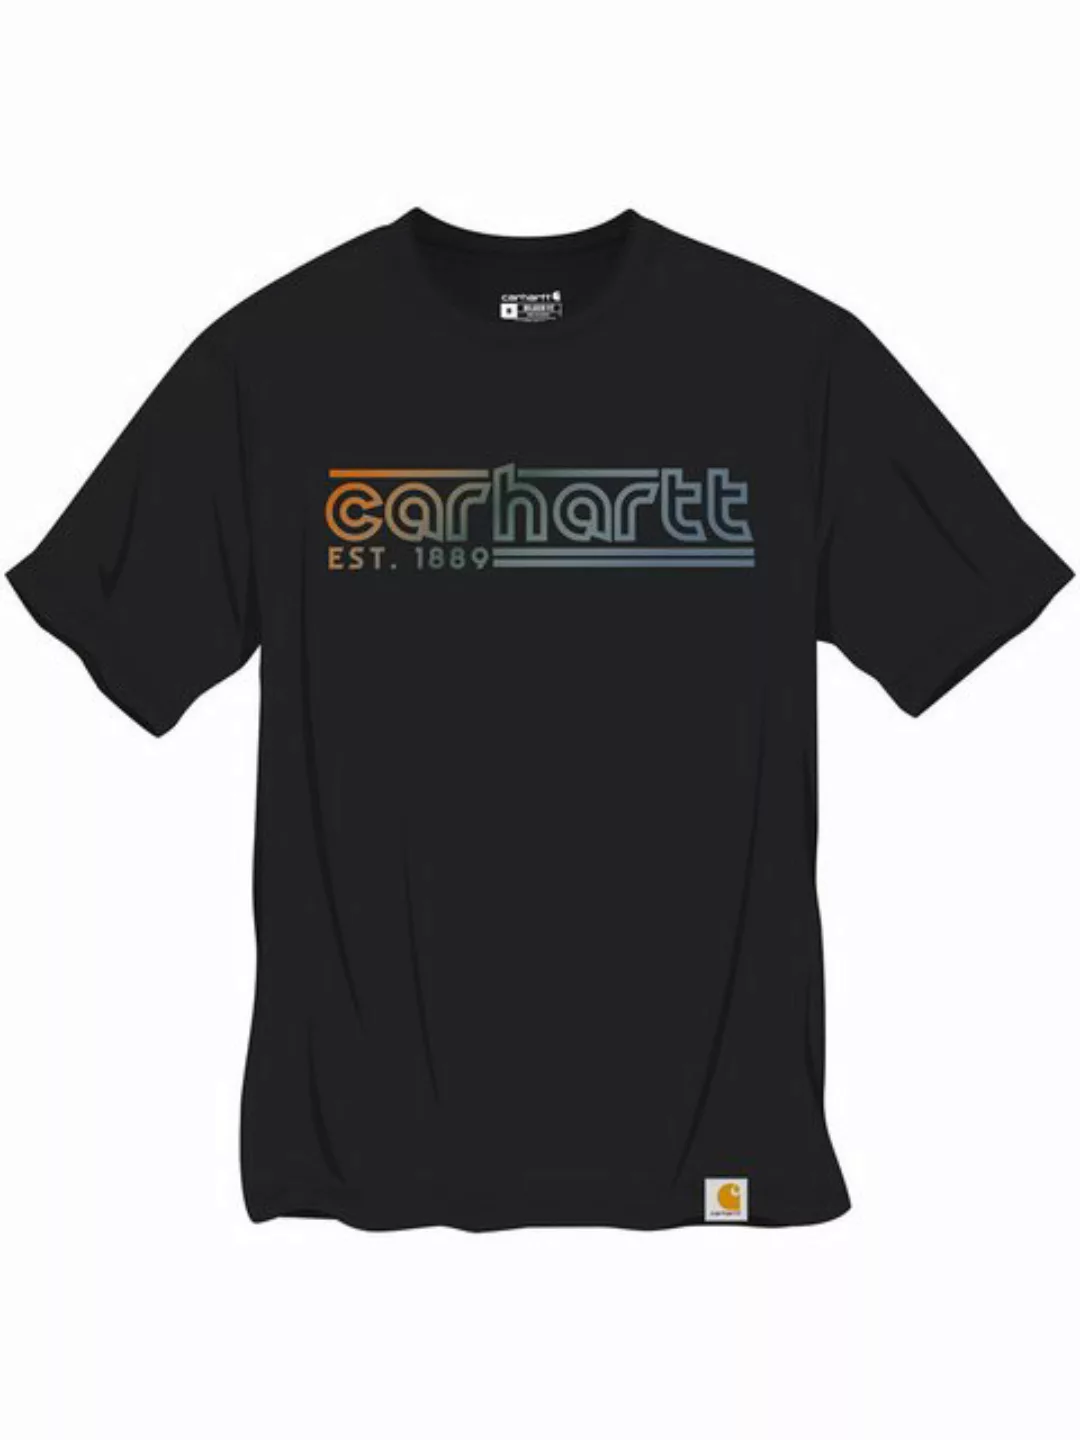 Carhartt T-Shirt 106538-N04 Carhartt Graphic günstig online kaufen